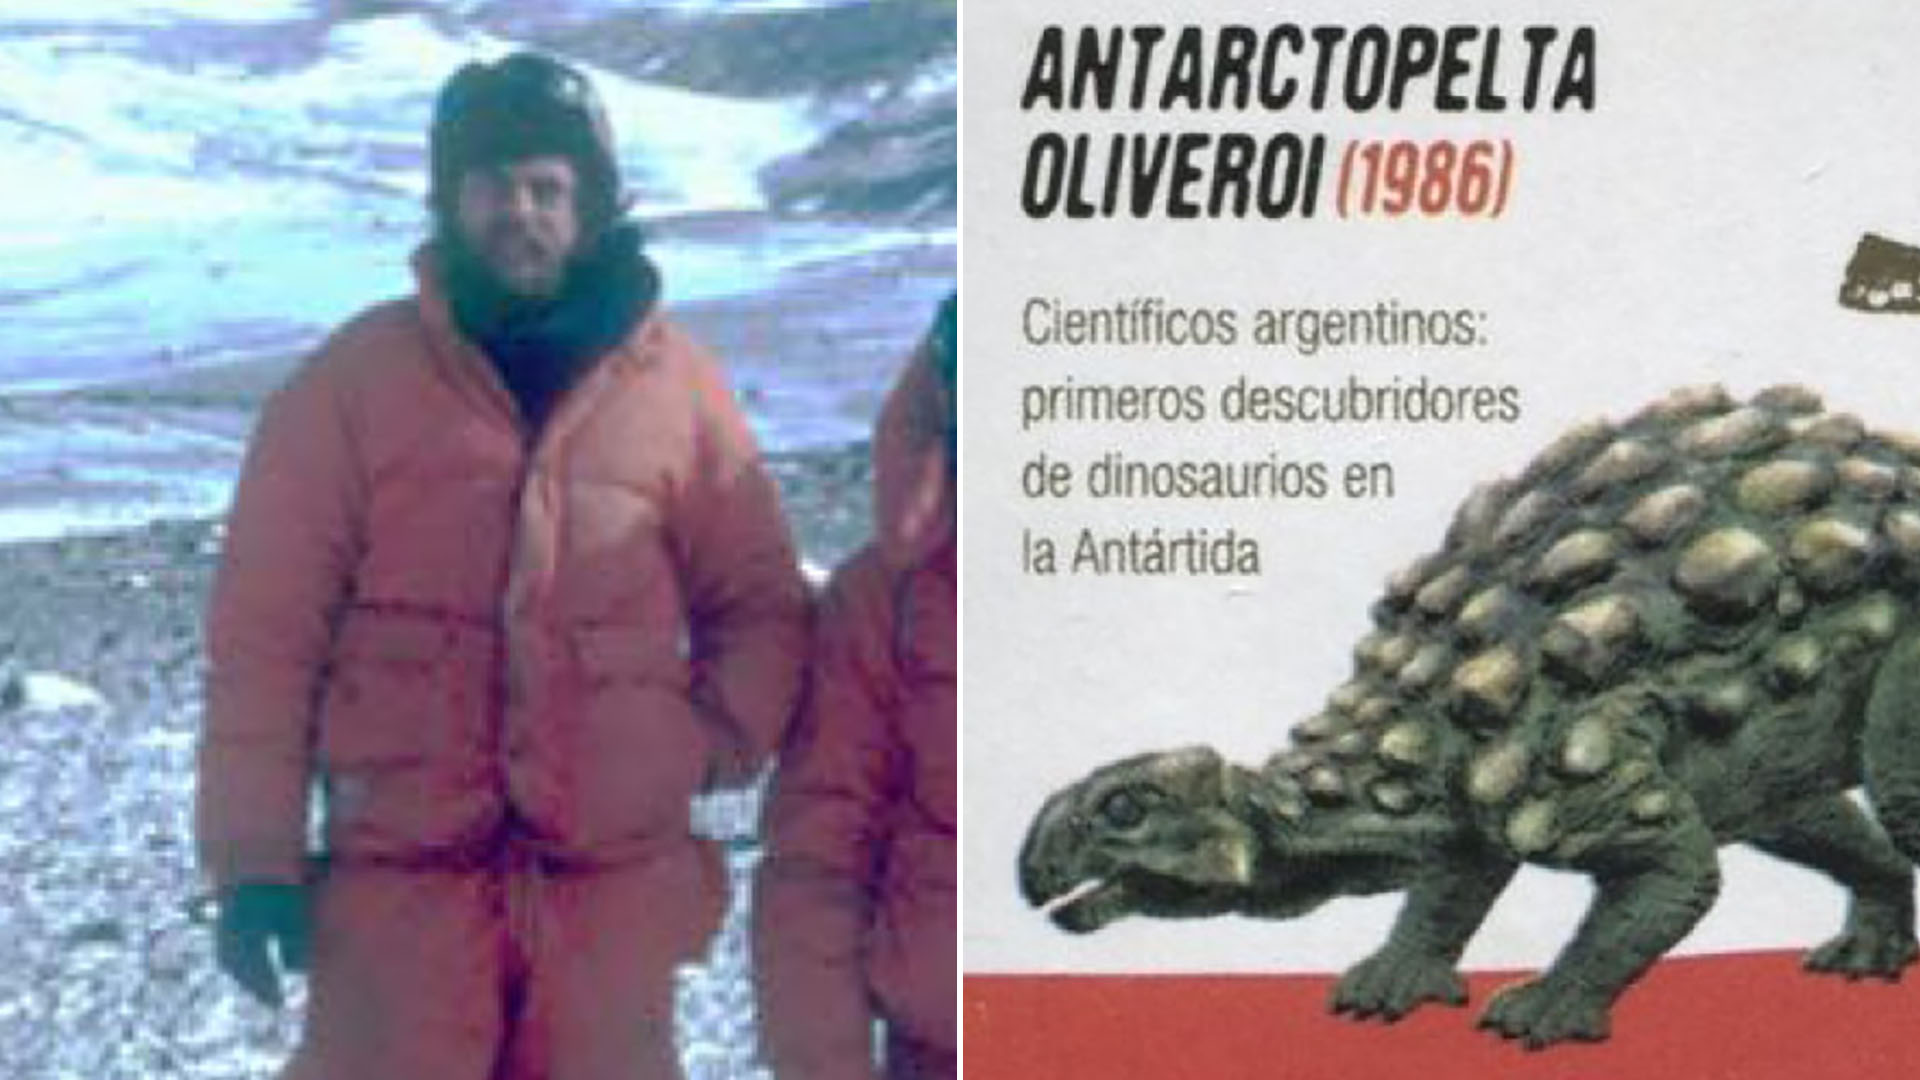 El otro gol a los ingleses”: memorias del geólogo argentino que descubrió  el primer dinosaurio en la Antártida en 1986 - Infobae